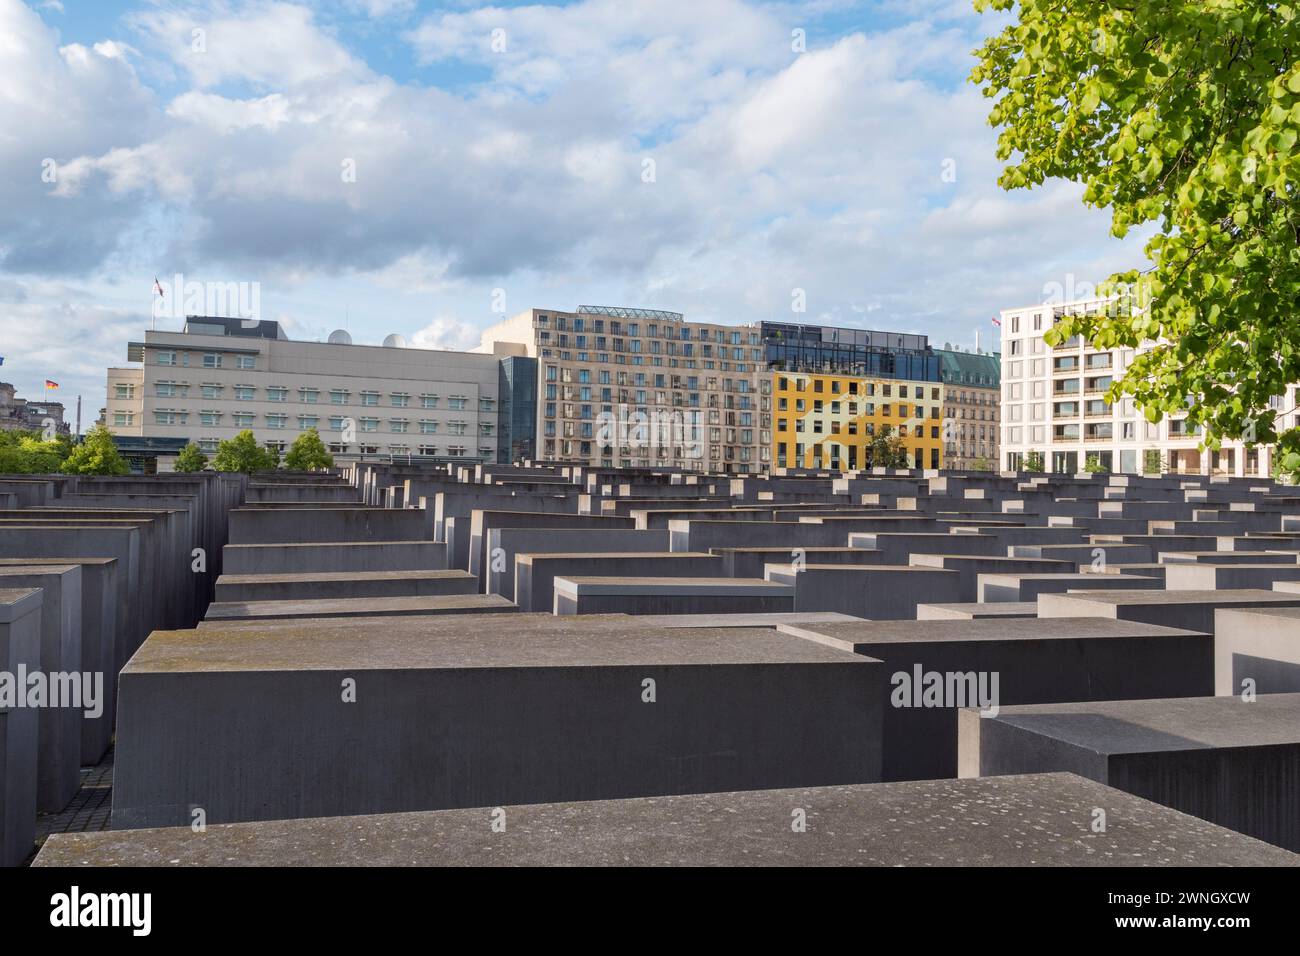 Le Mémorial aux Juifs assassinés d'Europe, Berlin, Allemagne Banque D'Images